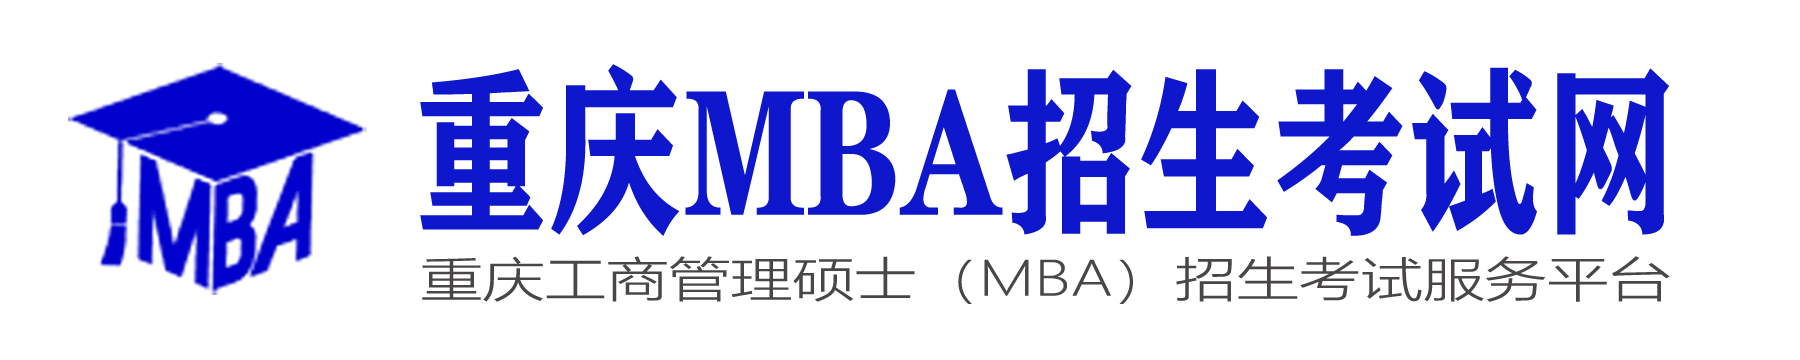 重慶MBA院校信息發布和咨詢平臺